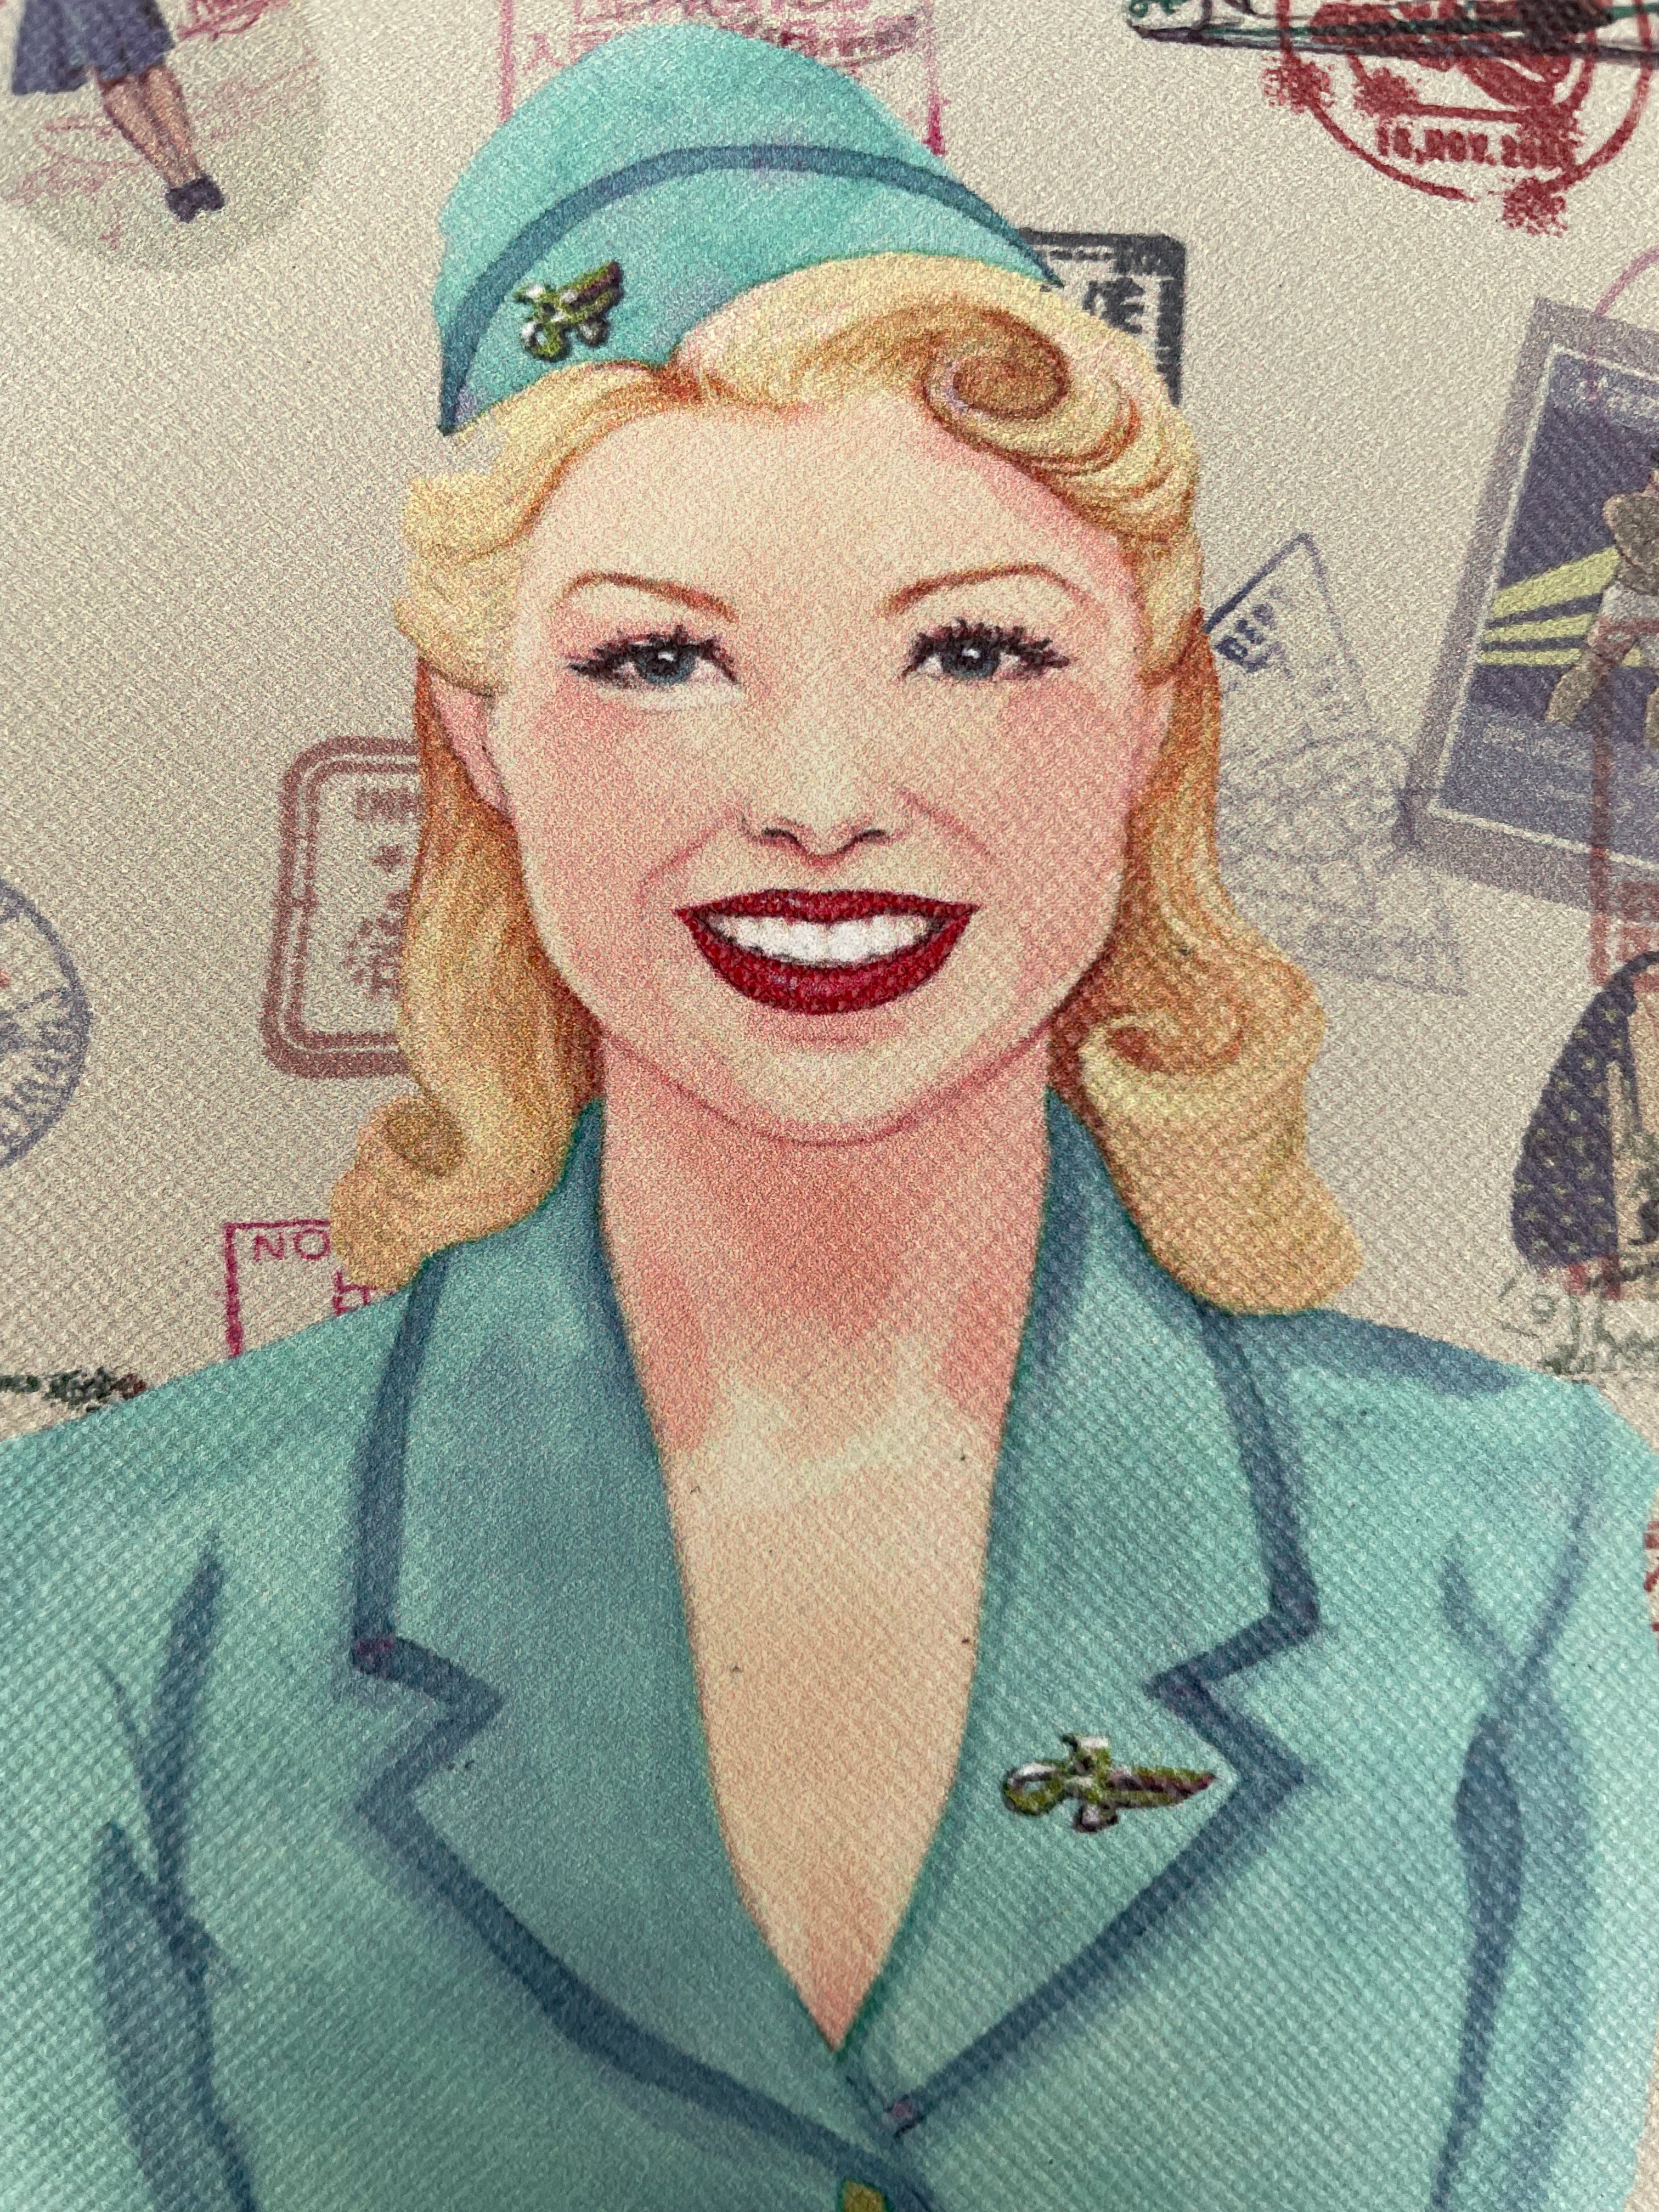 1950s Jane Amos Retro 'Airsupport Girl' Passport holder